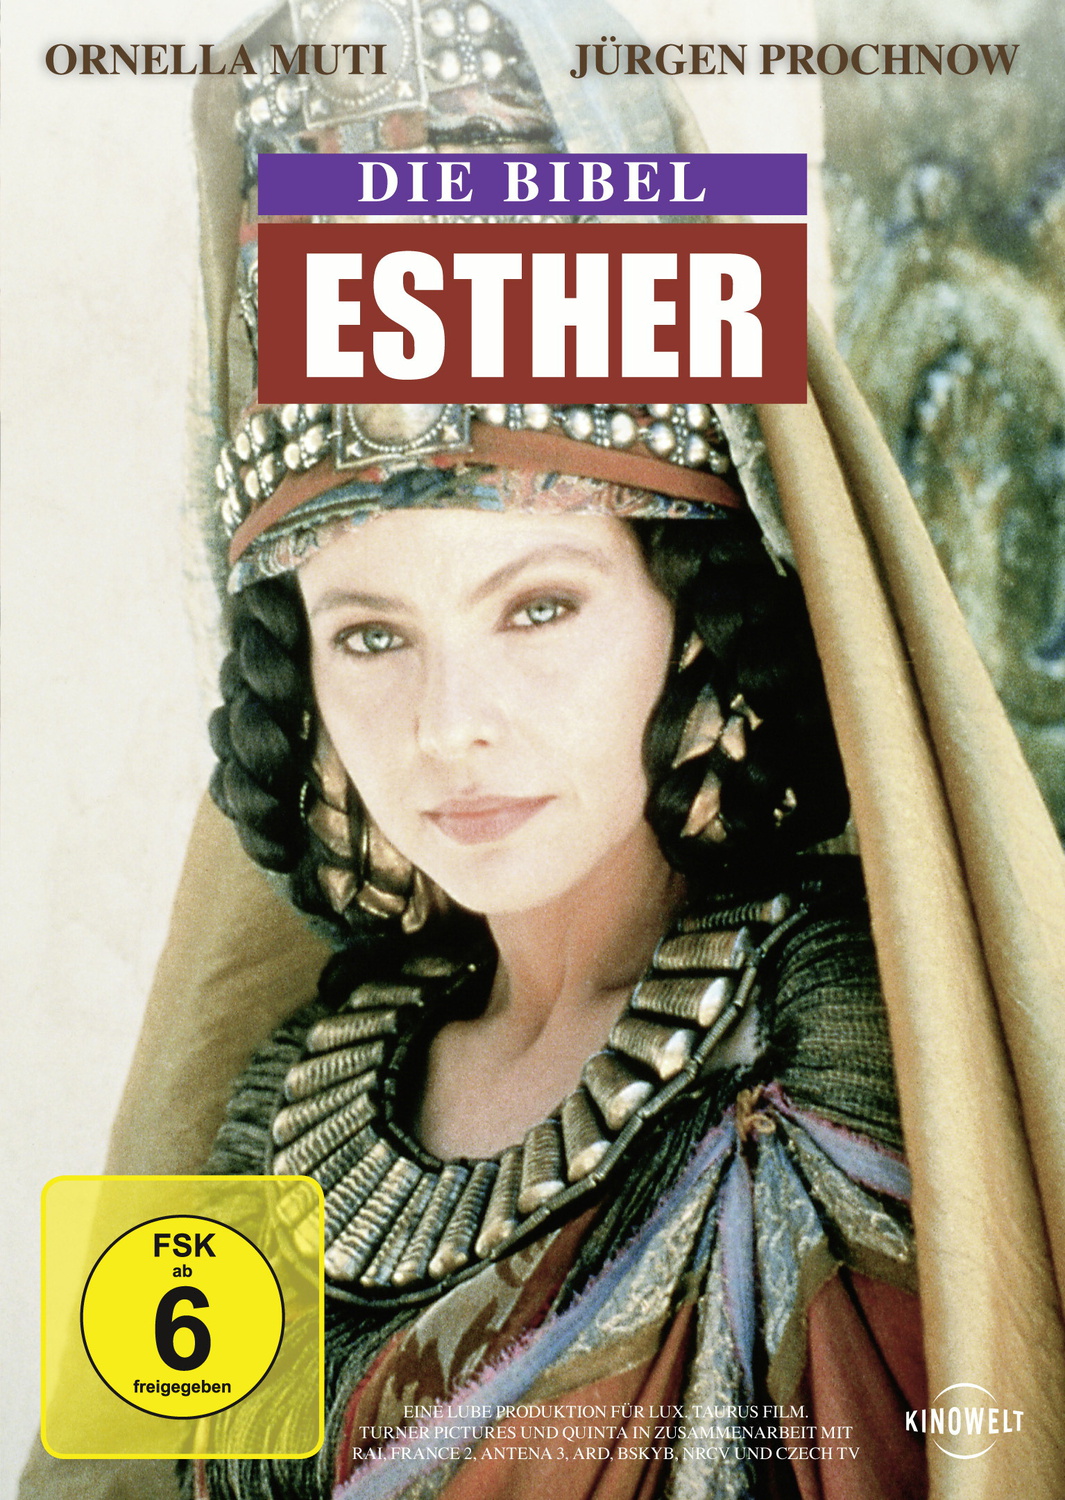 Die Bibel: Esther - Raffaele Mertes - DVD - www.mymediawelt.de - Shop